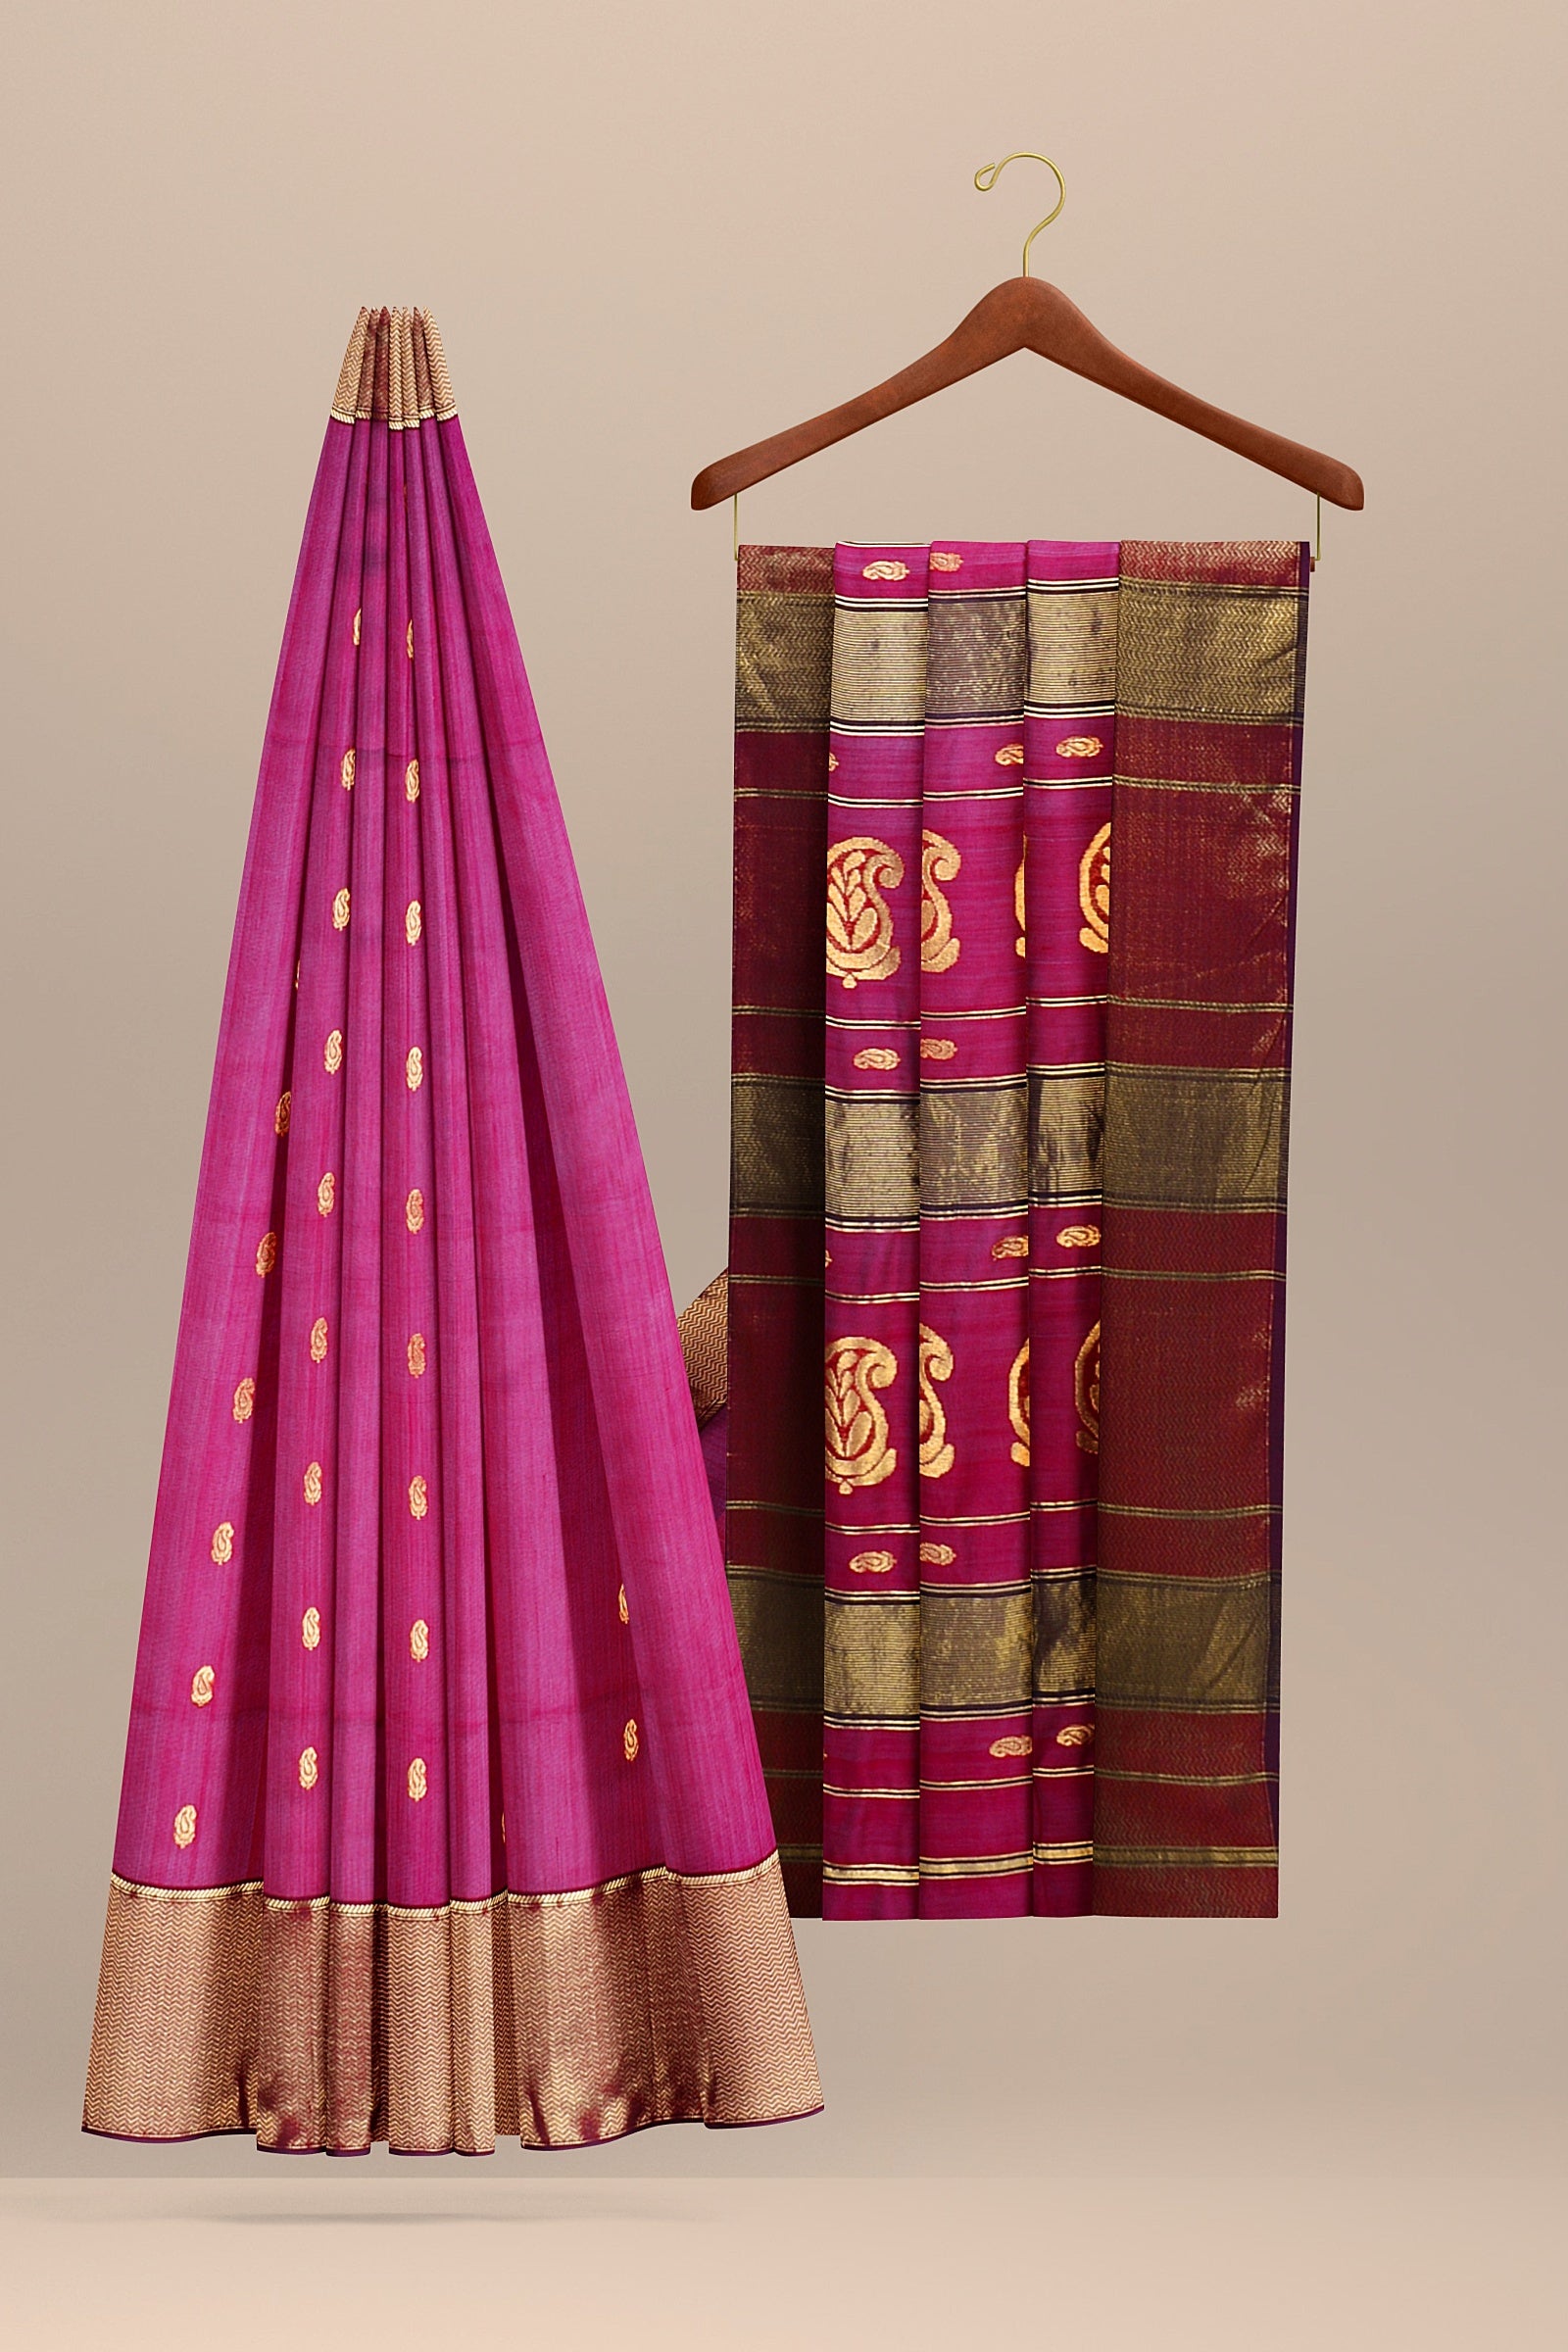 Hand Woven Rani Pink Color Traditional Buti Sausar Silk with Zari Border and Carry Buta Print Saree SKU-BS10113 - Bhartiya Shilp